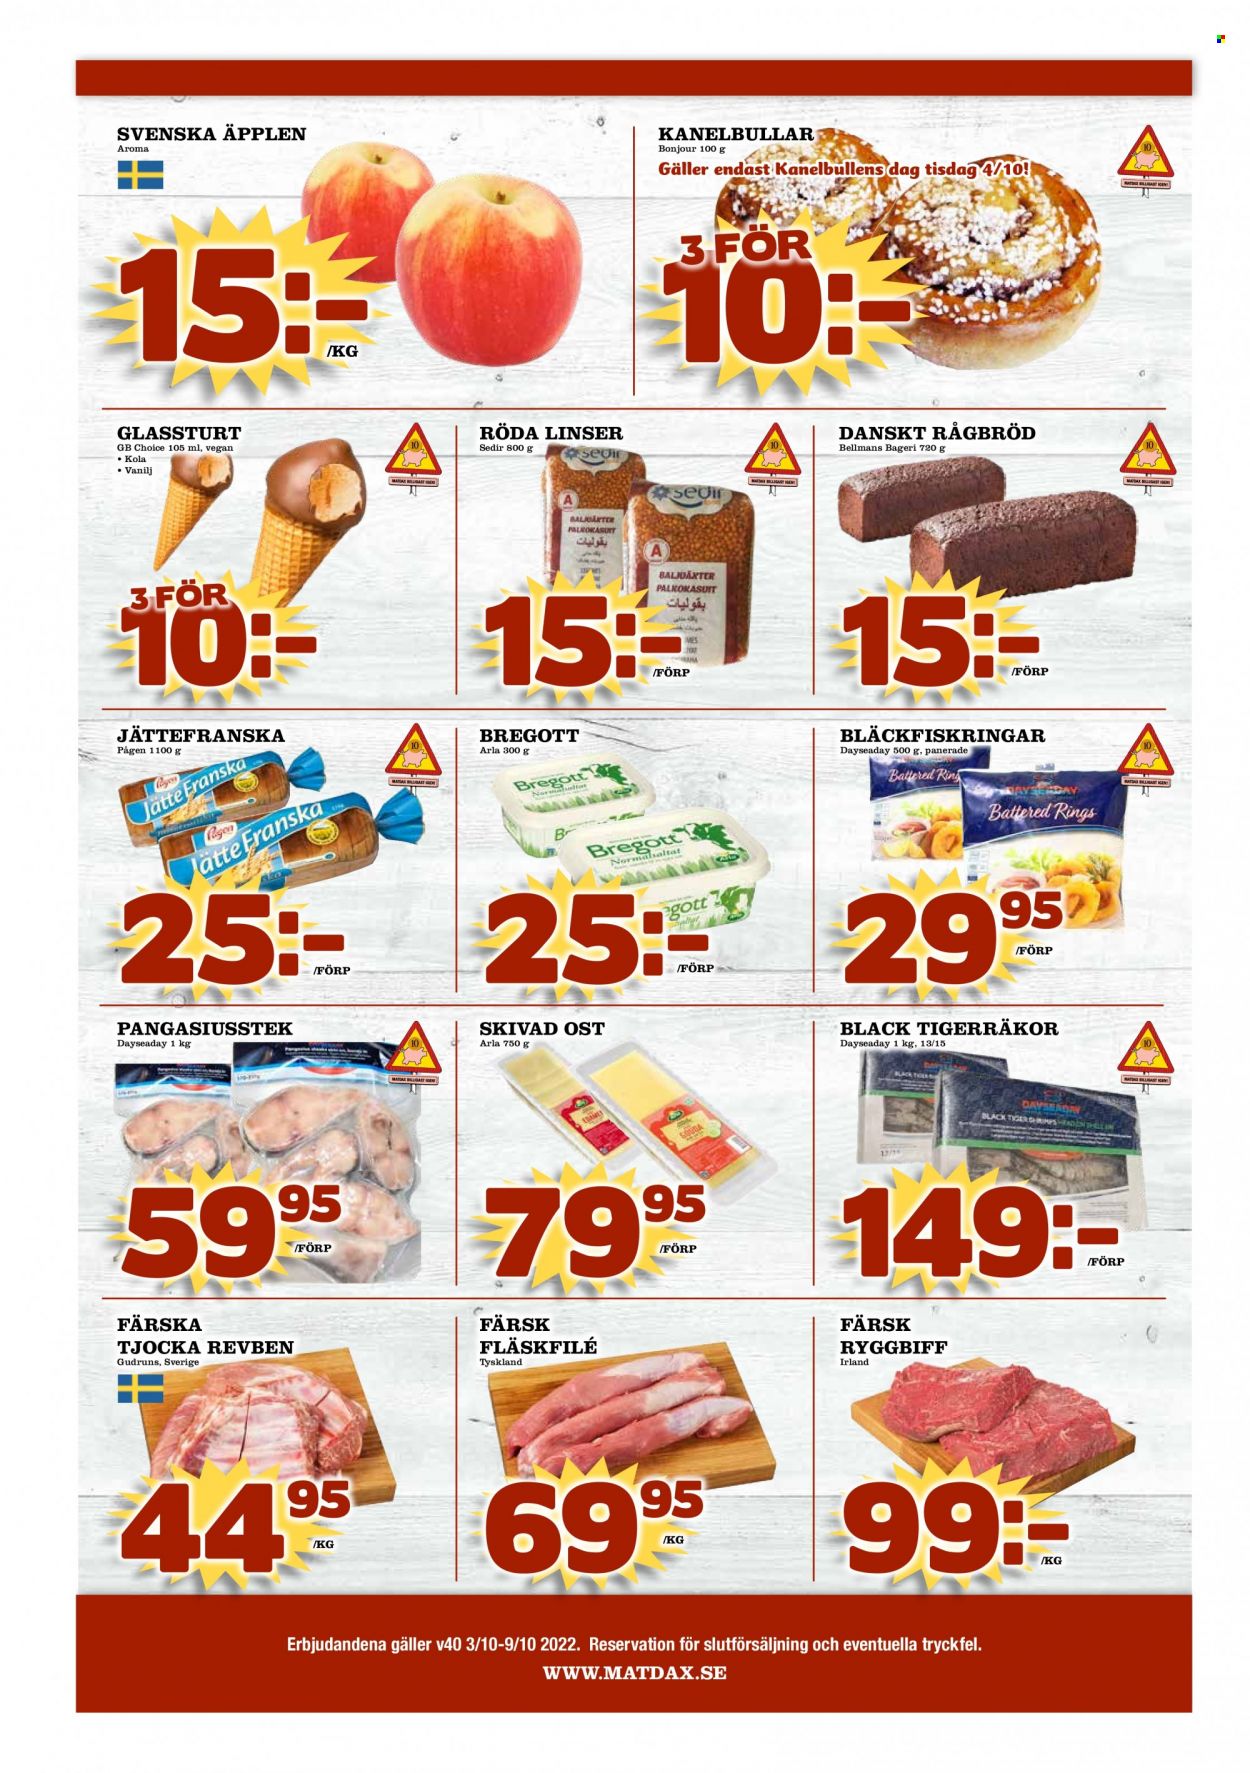 thumbnail - MatDax reklamblad - 3/10 2022 - 9/10 2022 - varor från reklamblad - äpplen, ryggbiff, nötkött, fläskfilé, revben, fläskkött, kanelbullar, ost, Arla, skivad ost, Bregott. Sida 8.